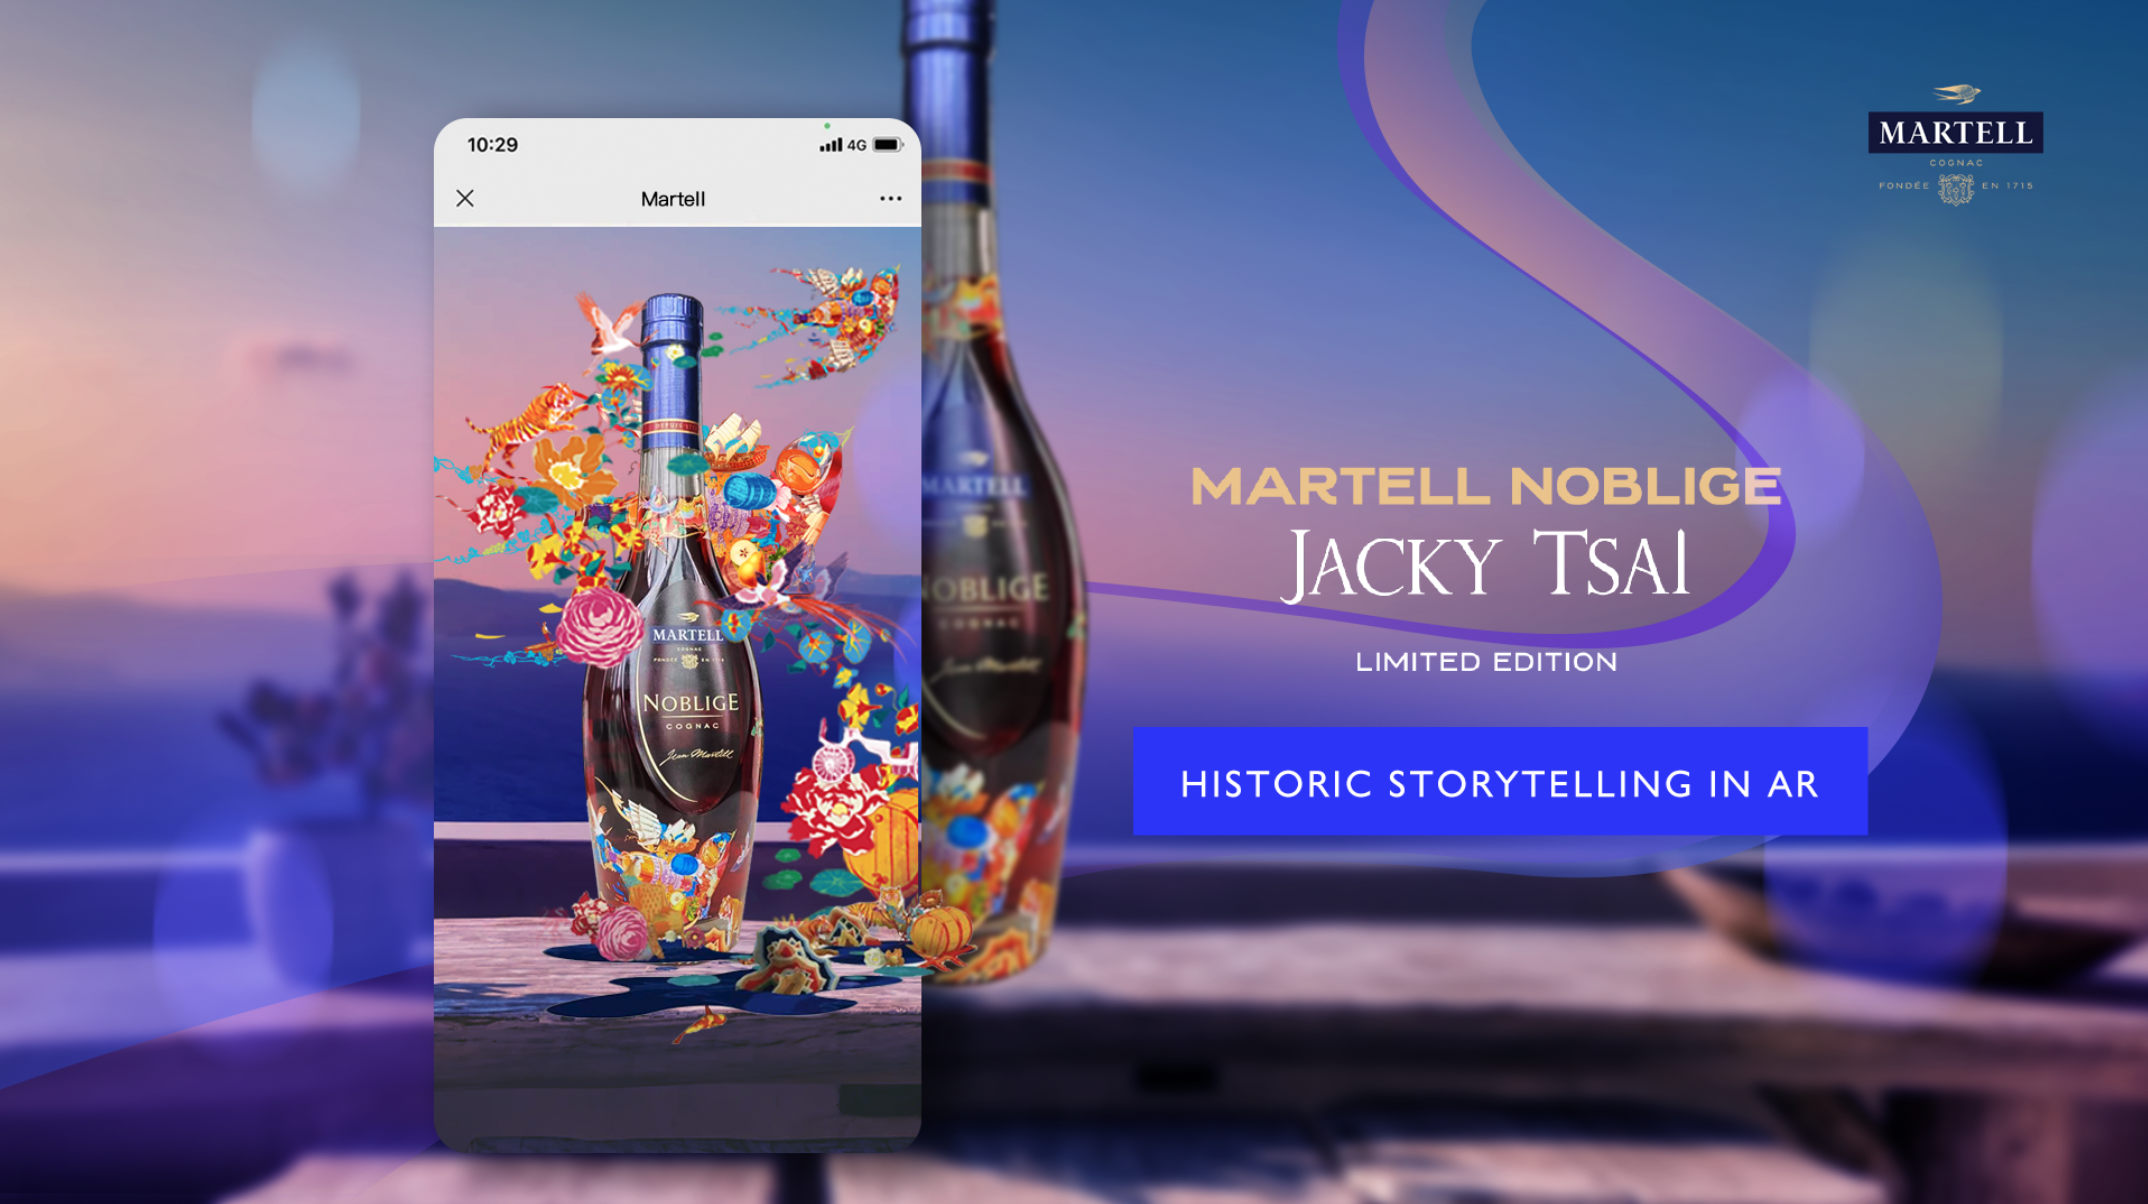 Martell Historical Storytelling in AR